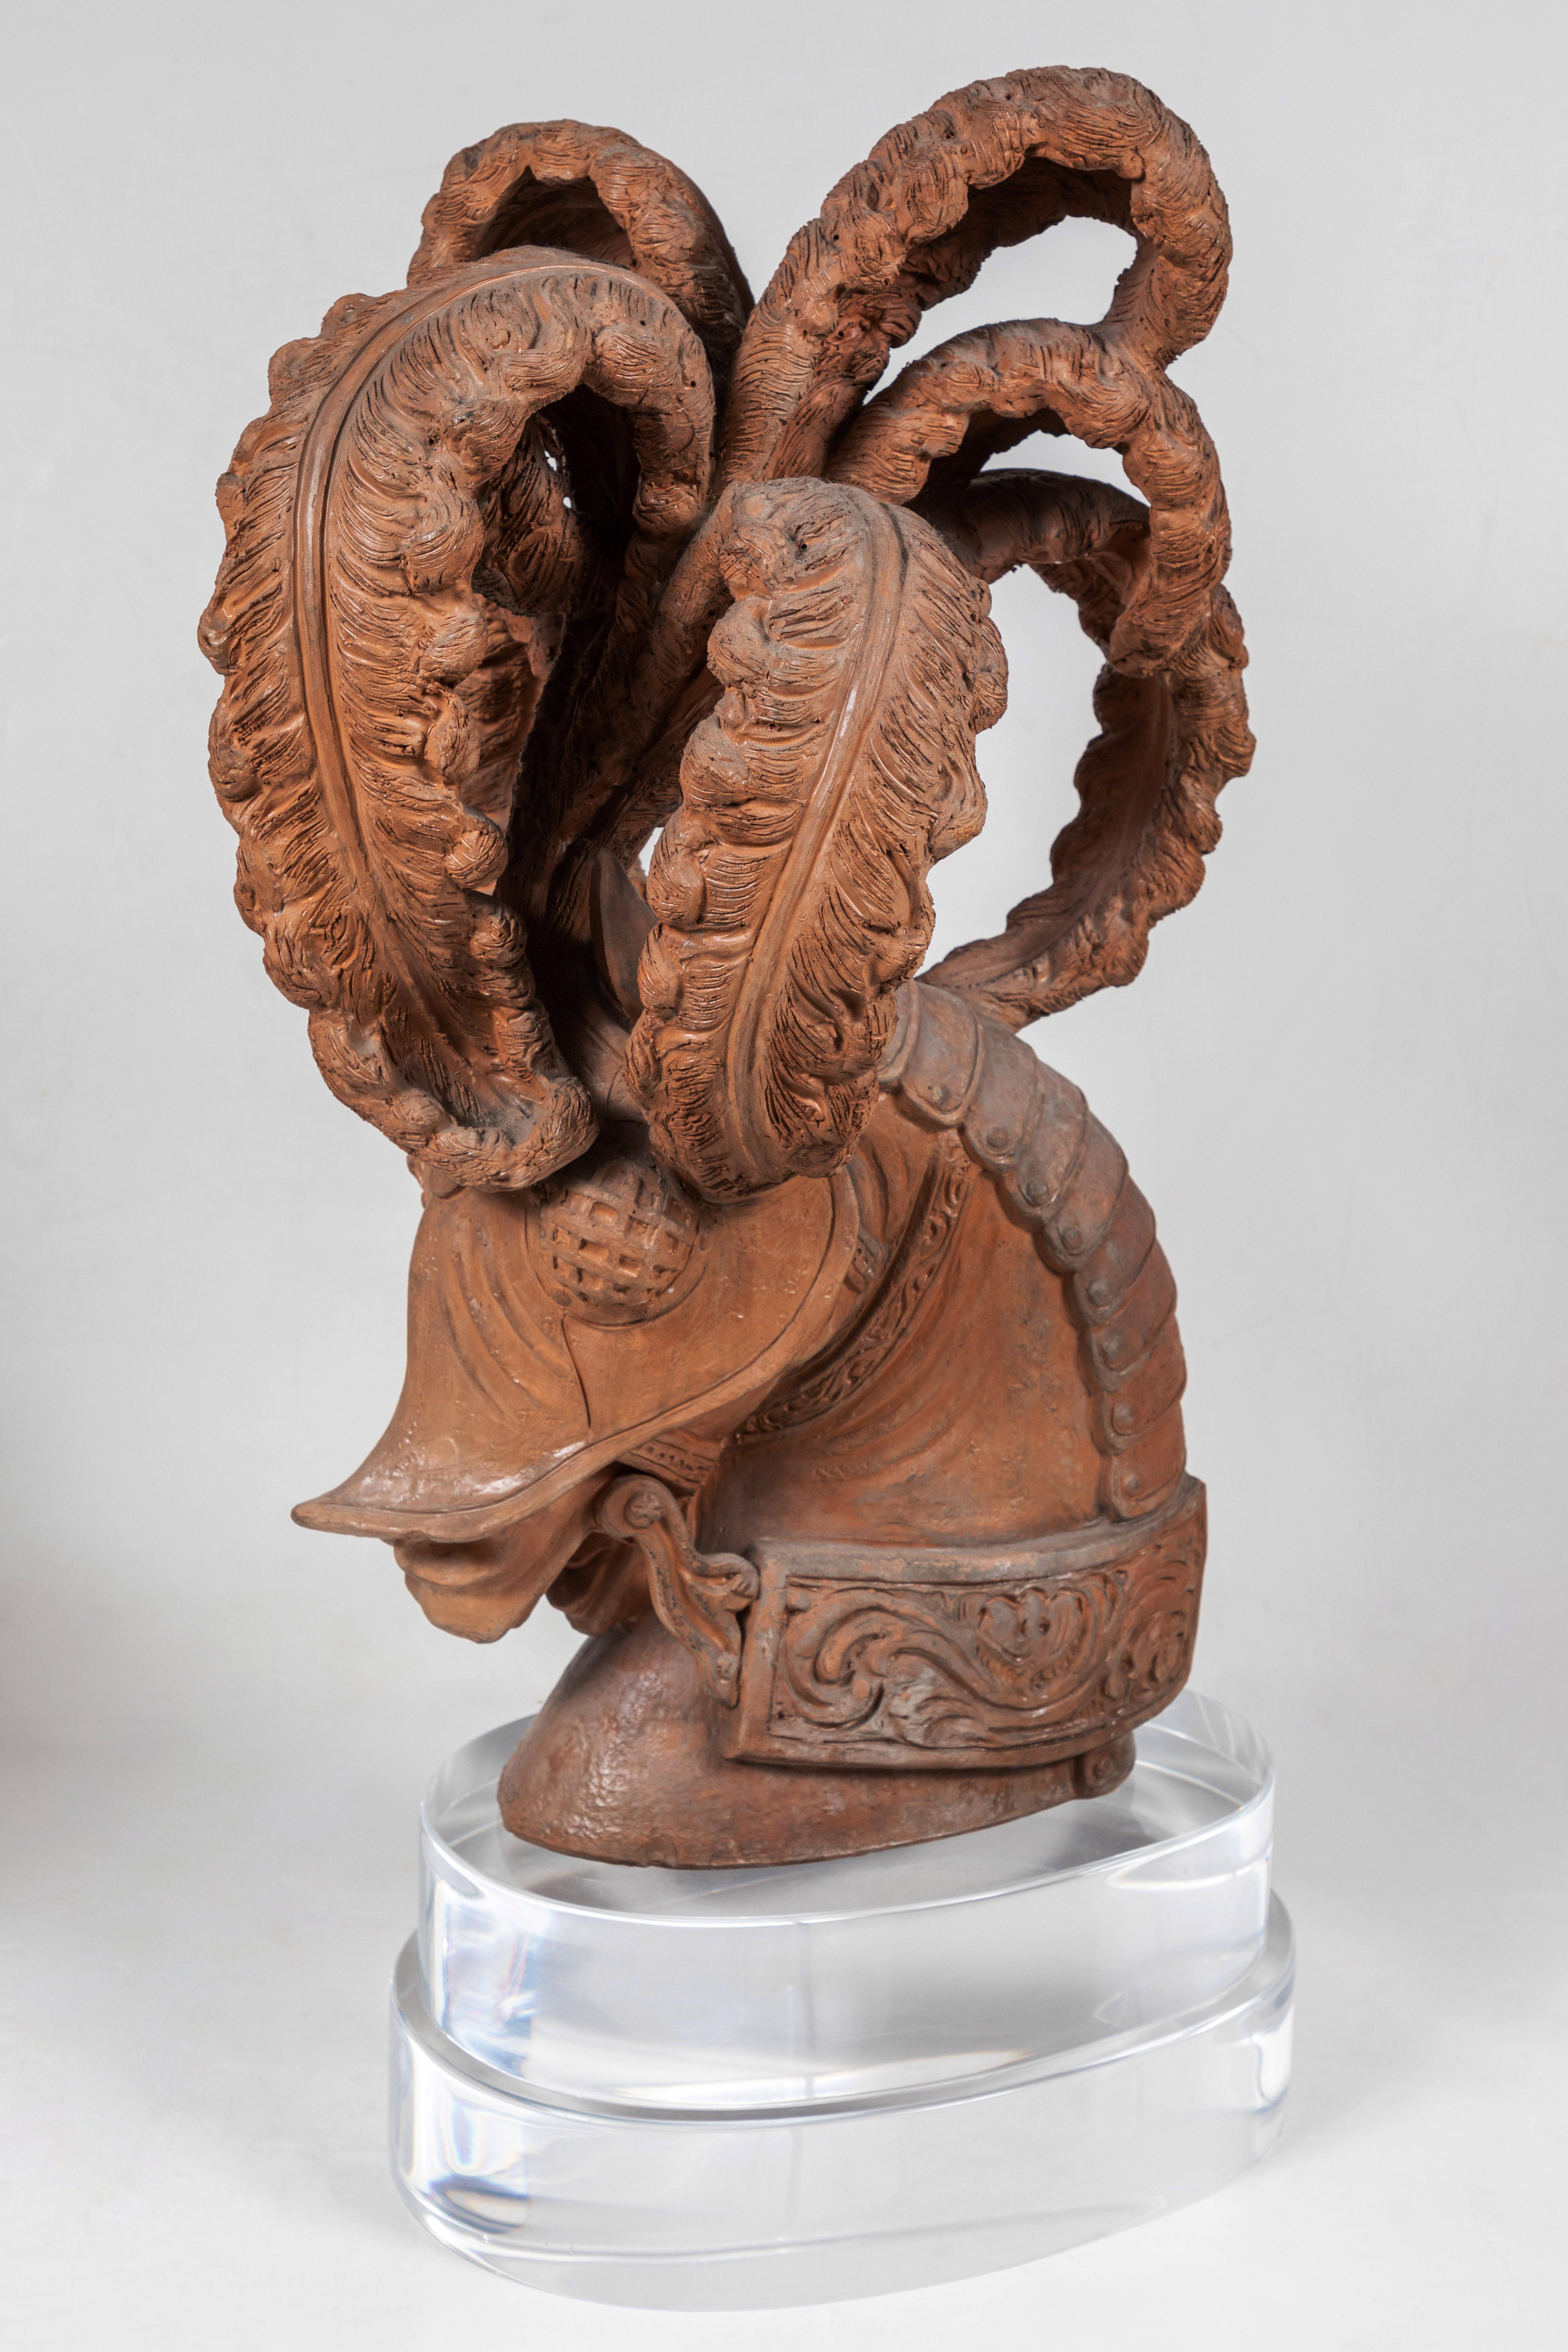 Sehr seltene italienische Terrakotta-Skulpturen eines Ritters und eines Pferdes, beide in Repousse-Rüstung und mit dramatischen Federn geschmückt.  Sie sind jeweils auf speziell angefertigten Sockeln aus Lucit montiert.

Maße: Ritter 22